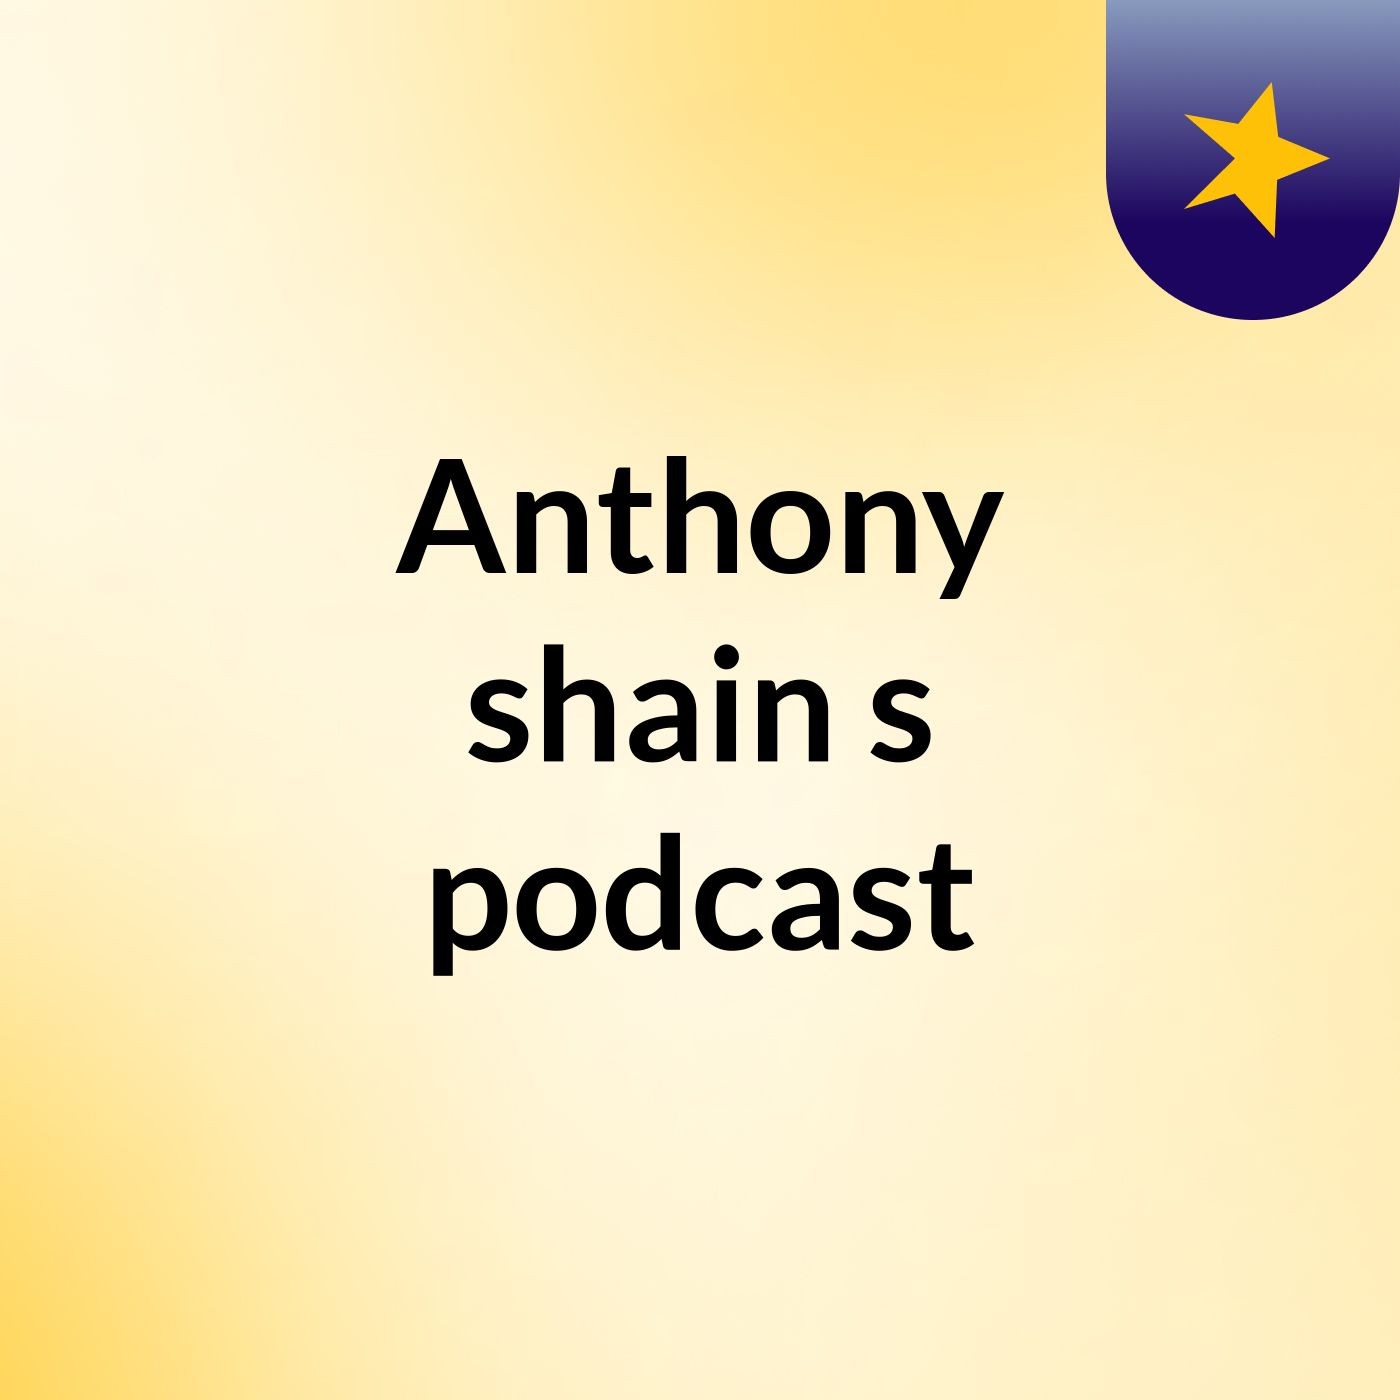 Episode 3 - Anthony shain's podcast